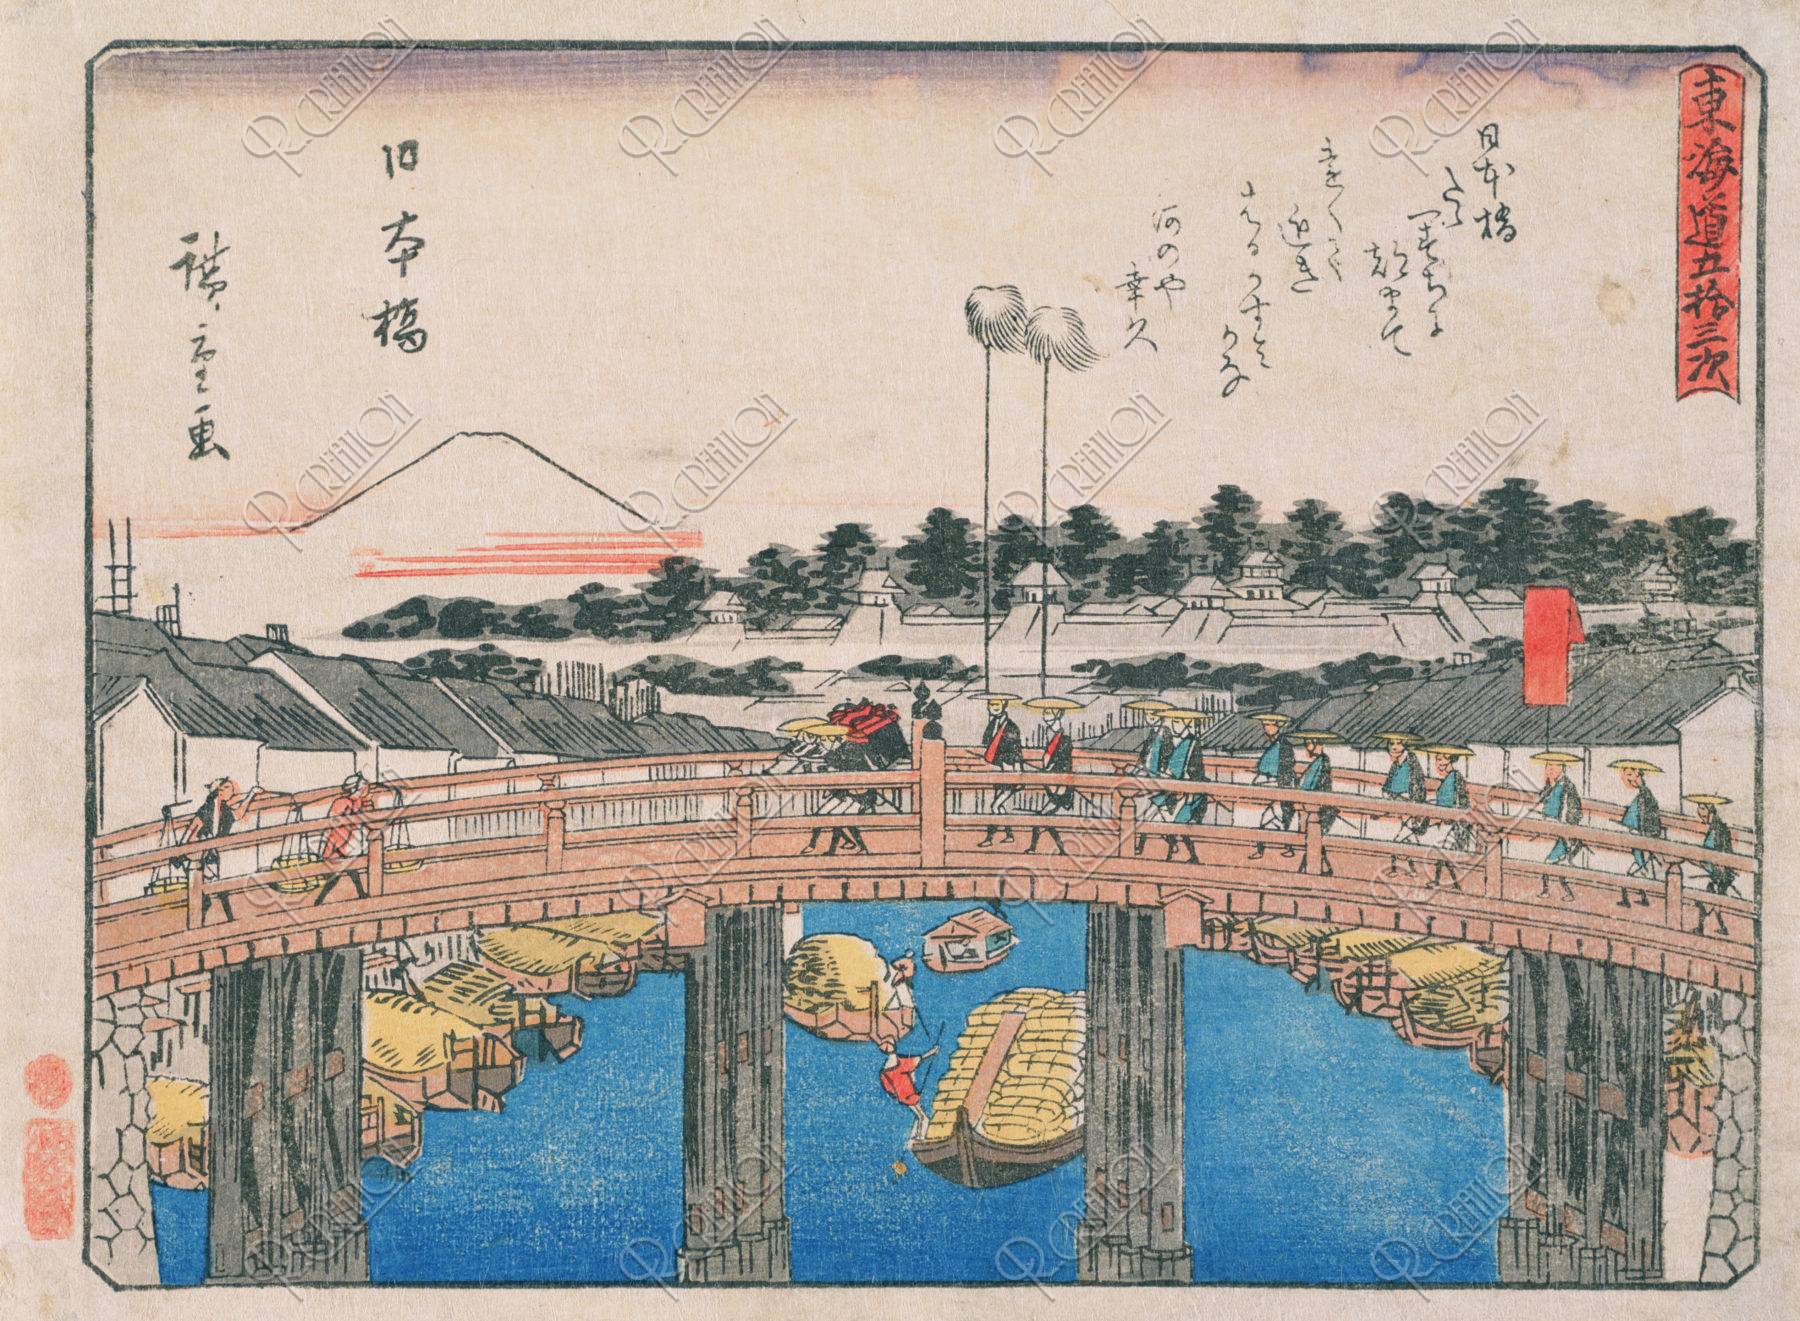 東海道五十三次日本橋 広重作